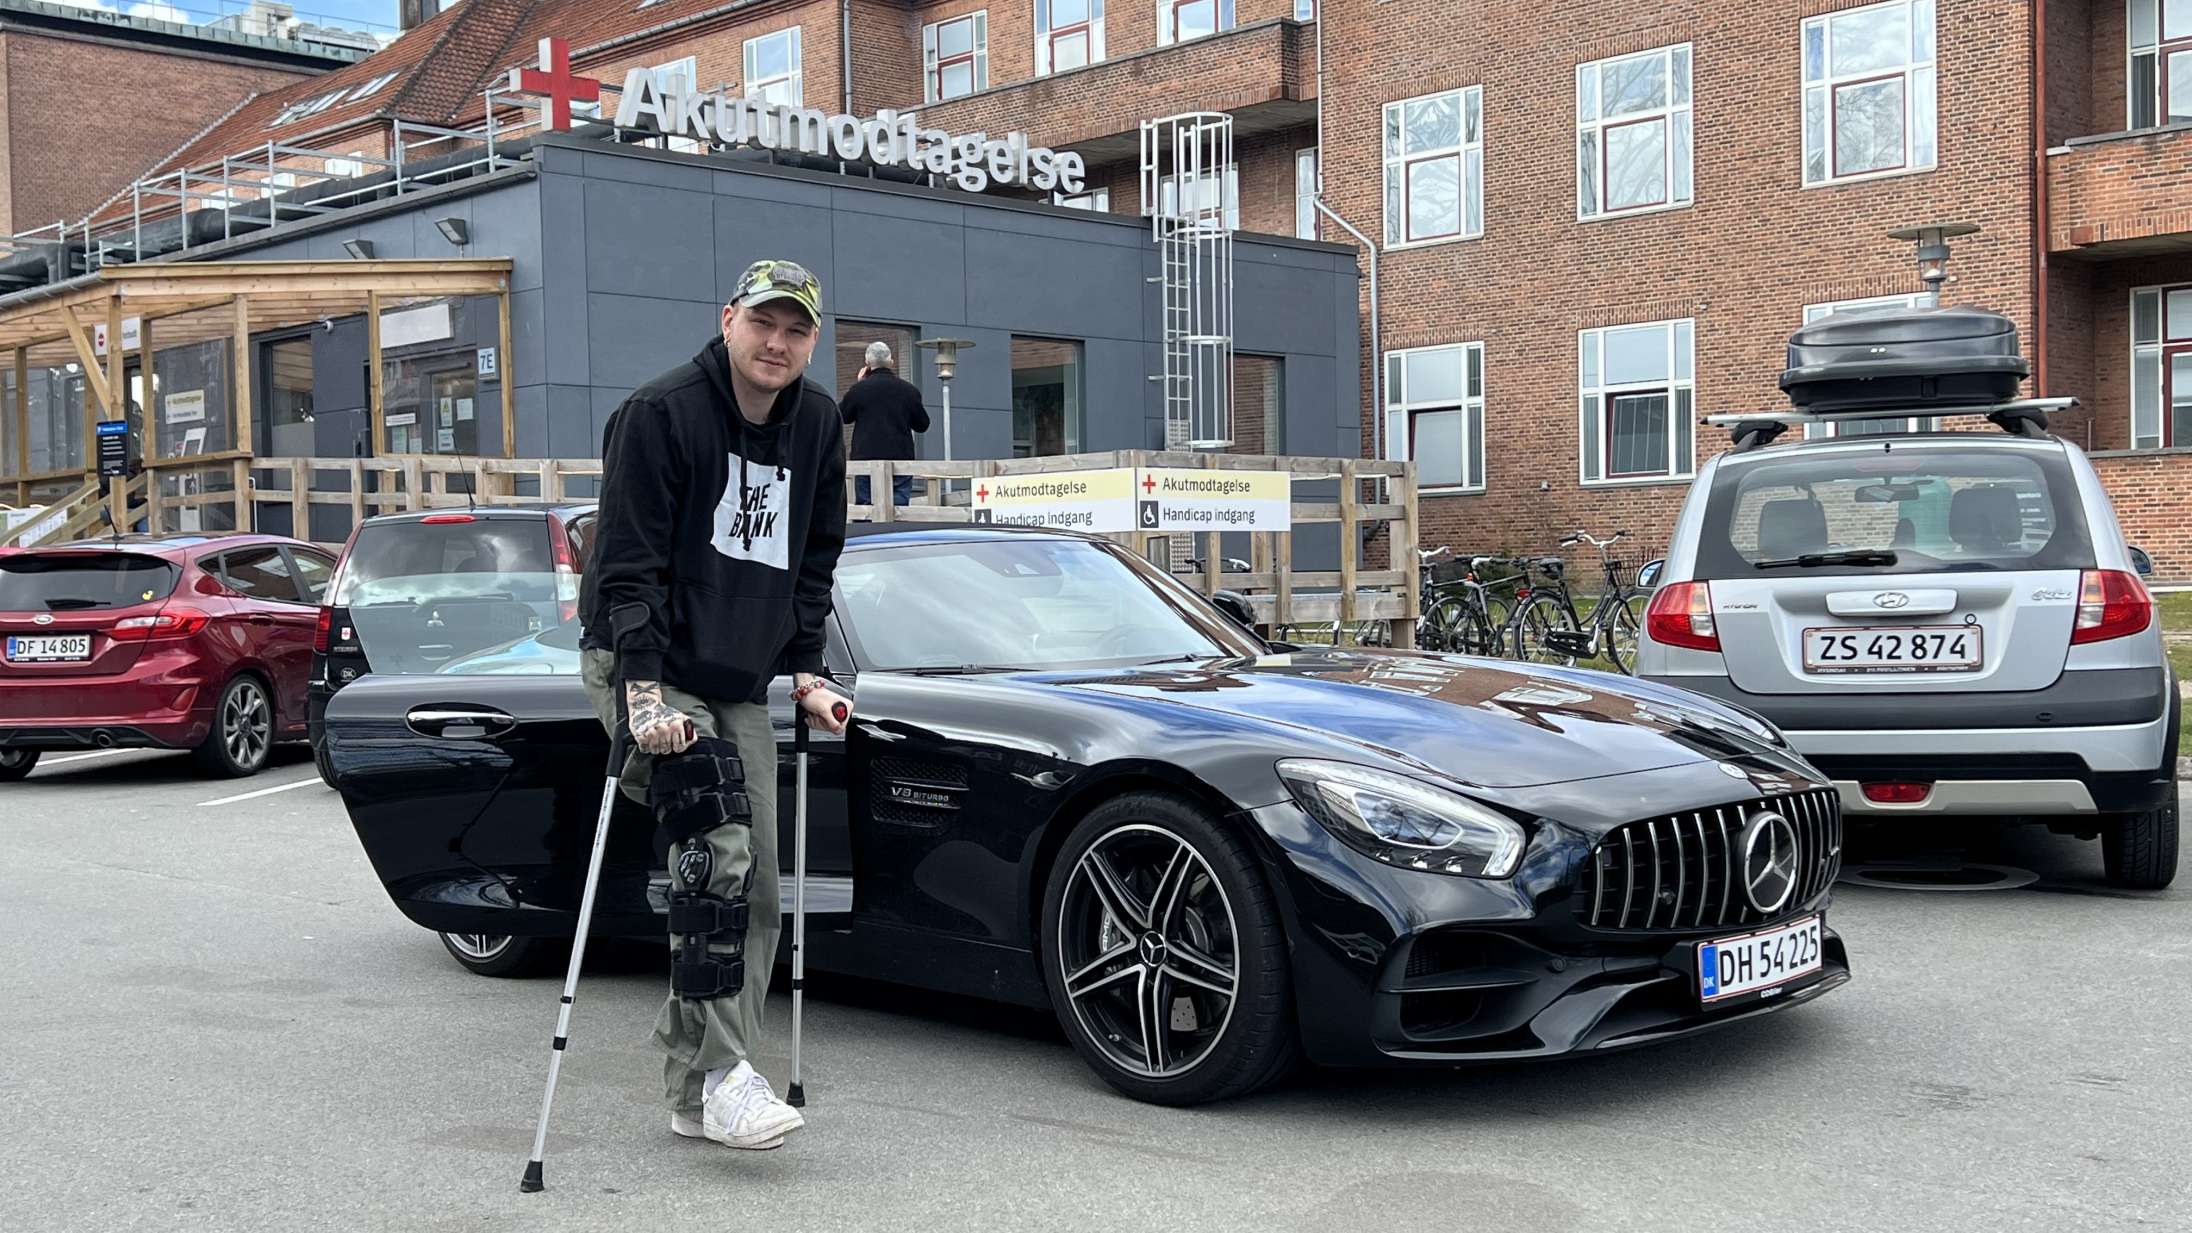 Fabräk indleder Danmarksturné på krykker efter uheld til releasekoncert